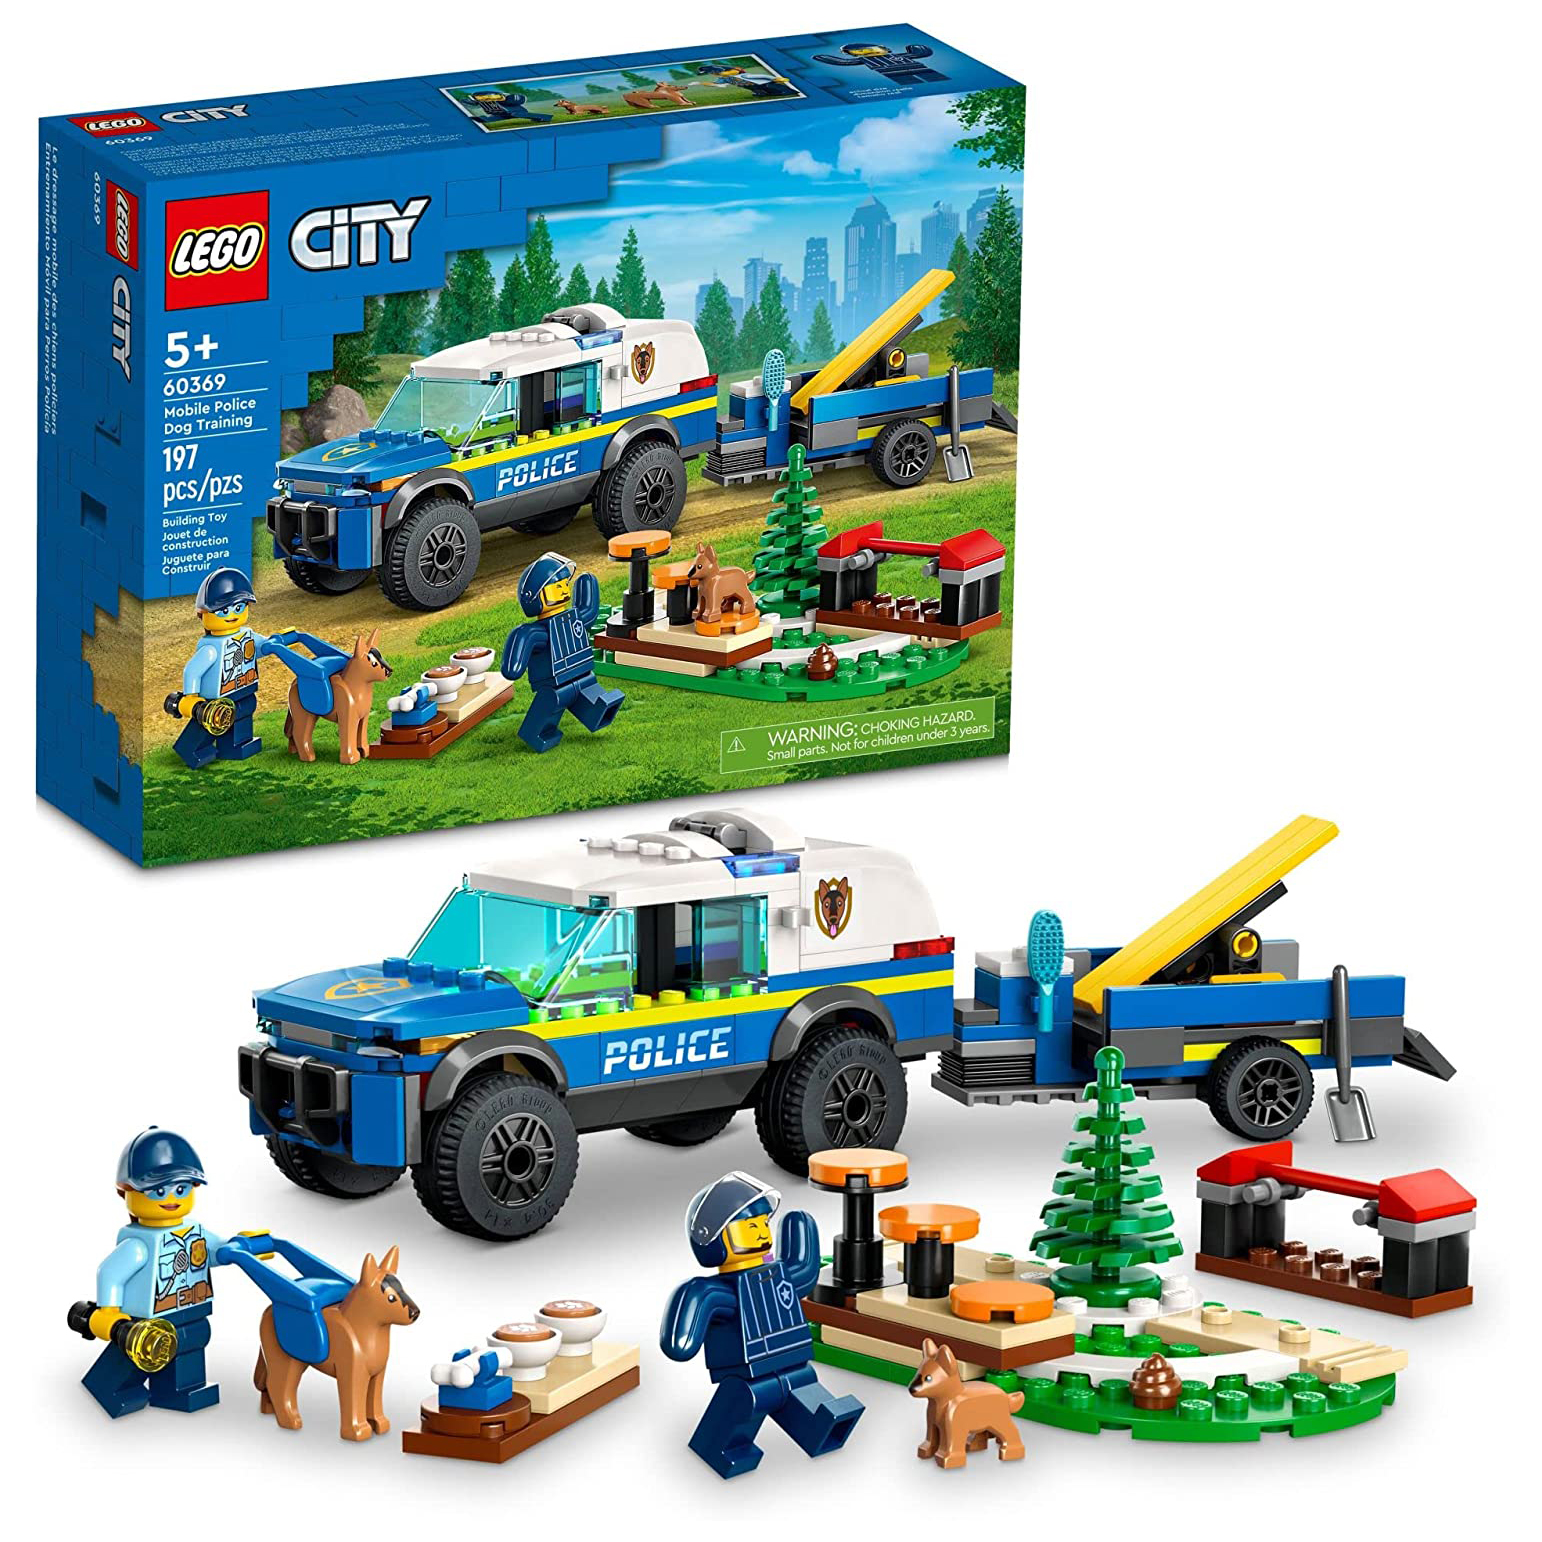 Конструктор LEGO City Дрессировка полицейской собаки на выезде, 197 деталей, 60369 lego city игровой турнирный грузовик 60388